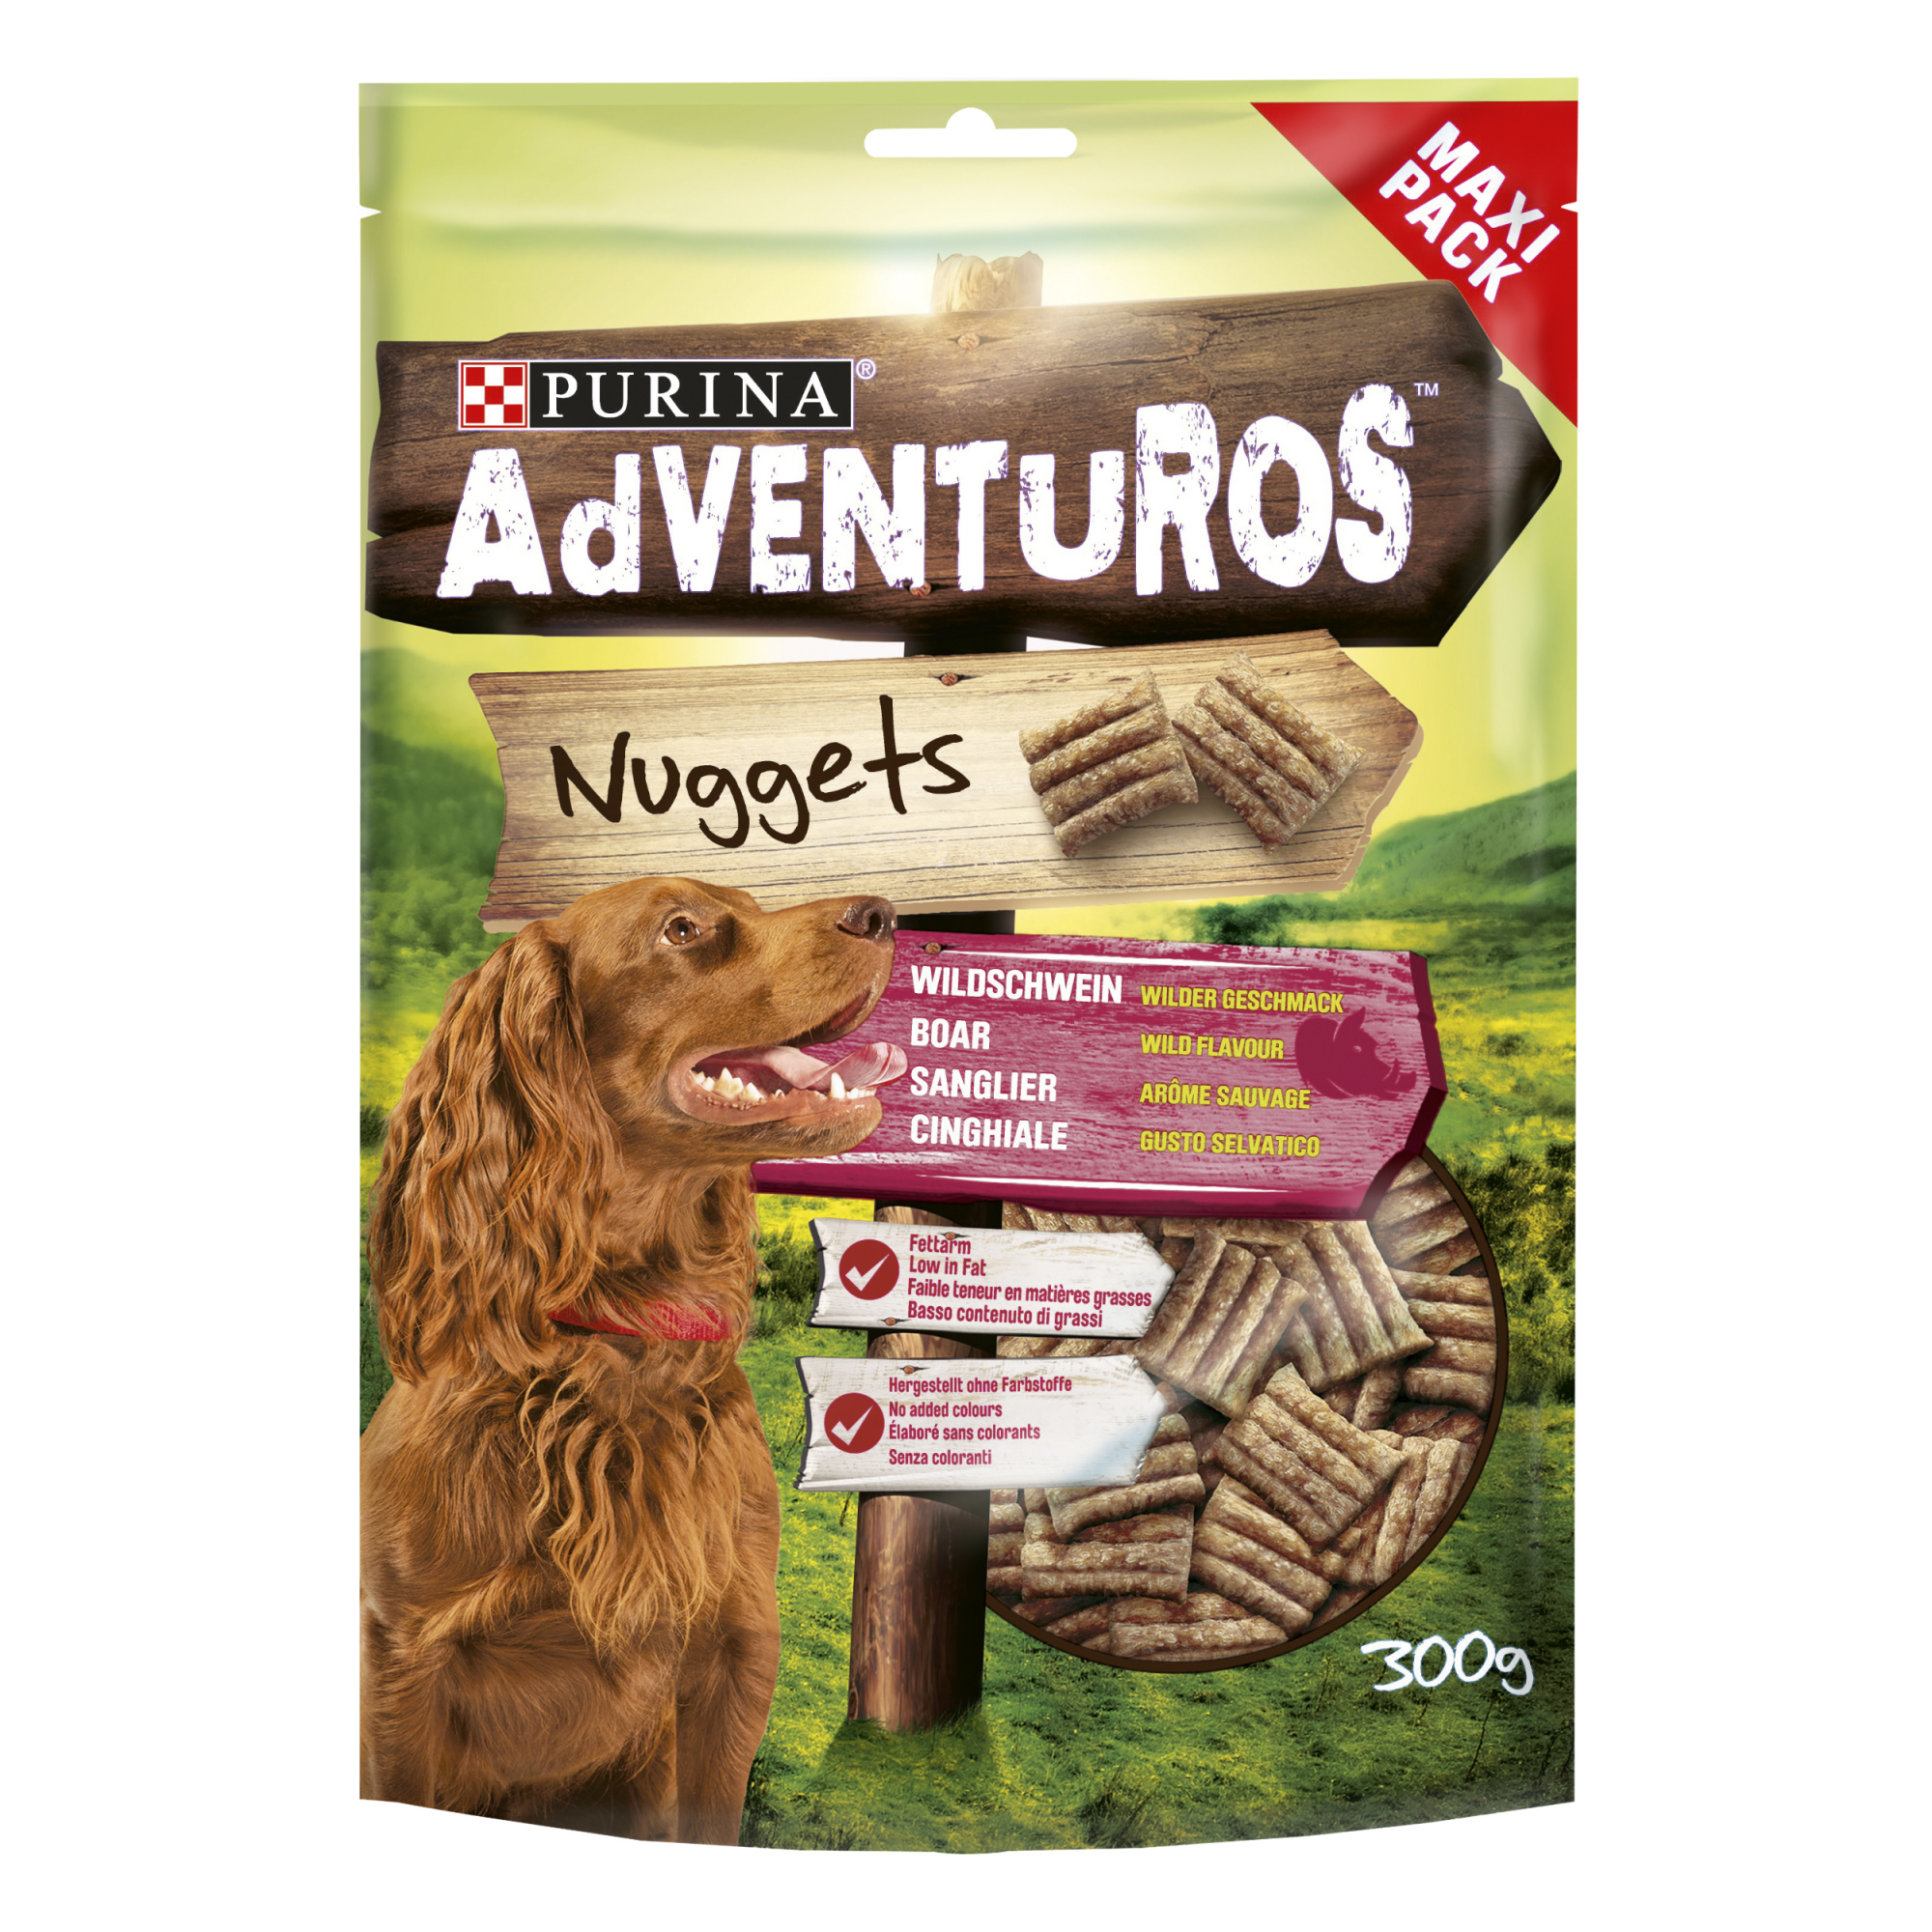 Adventuros Friandises Nuggets Wildschwein Aroma für Hund